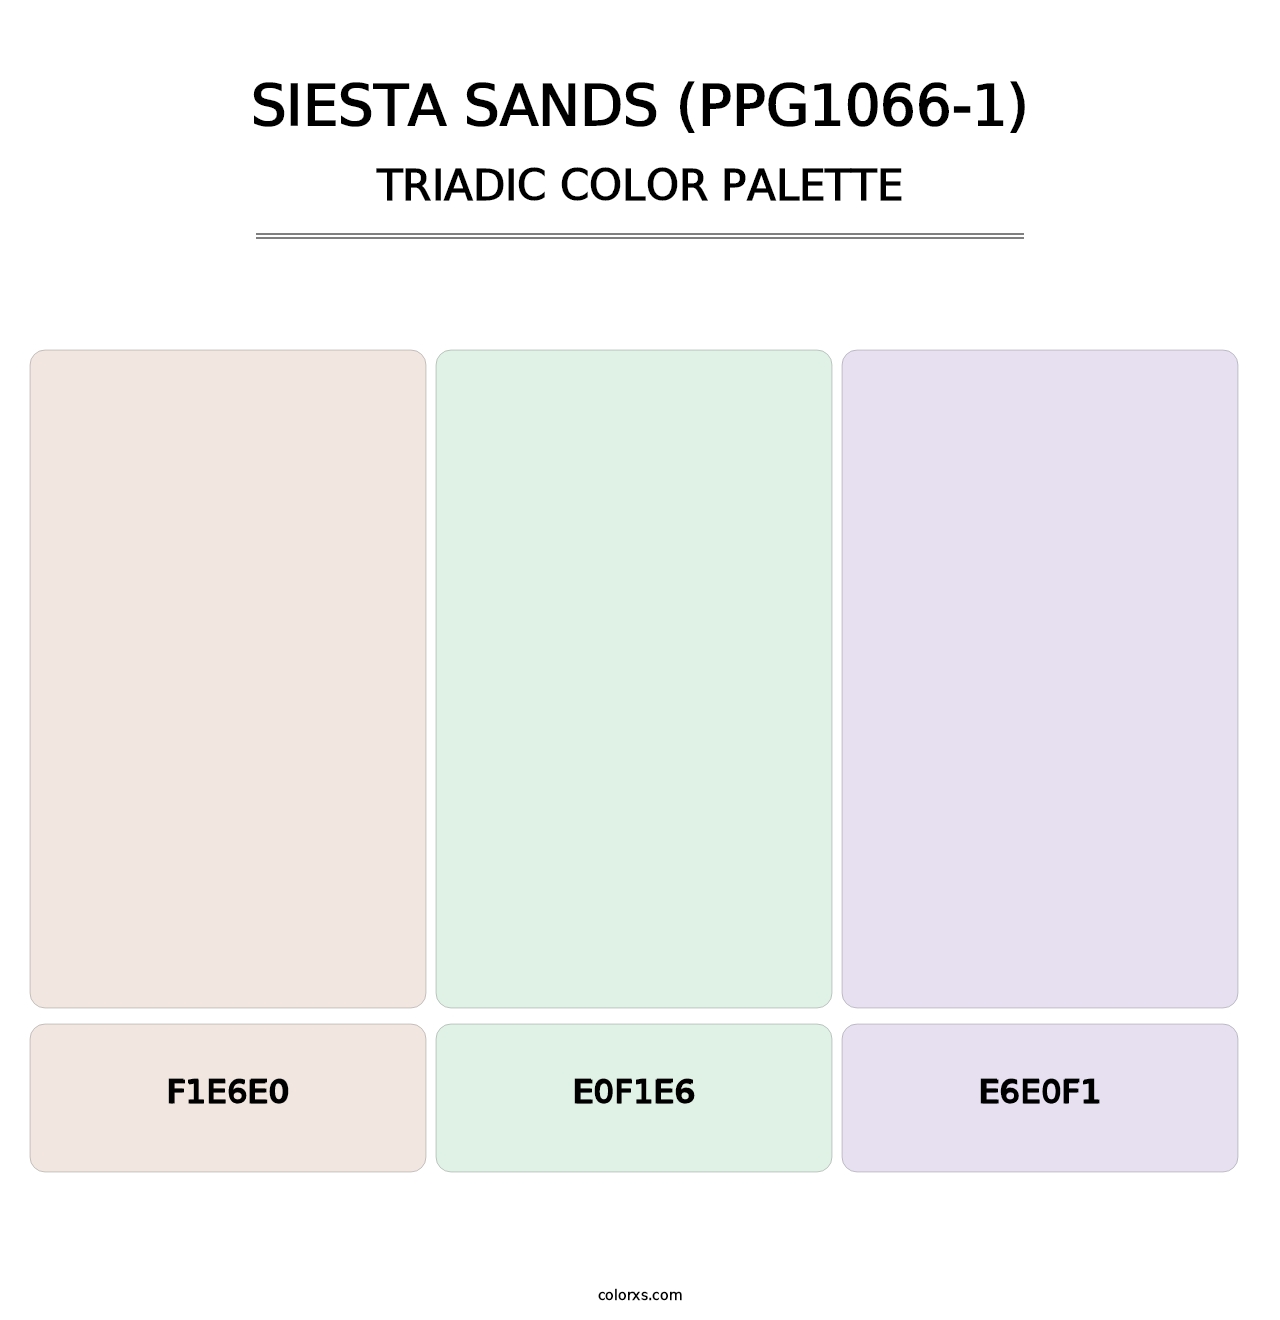 Siesta Sands (PPG1066-1) - Triadic Color Palette